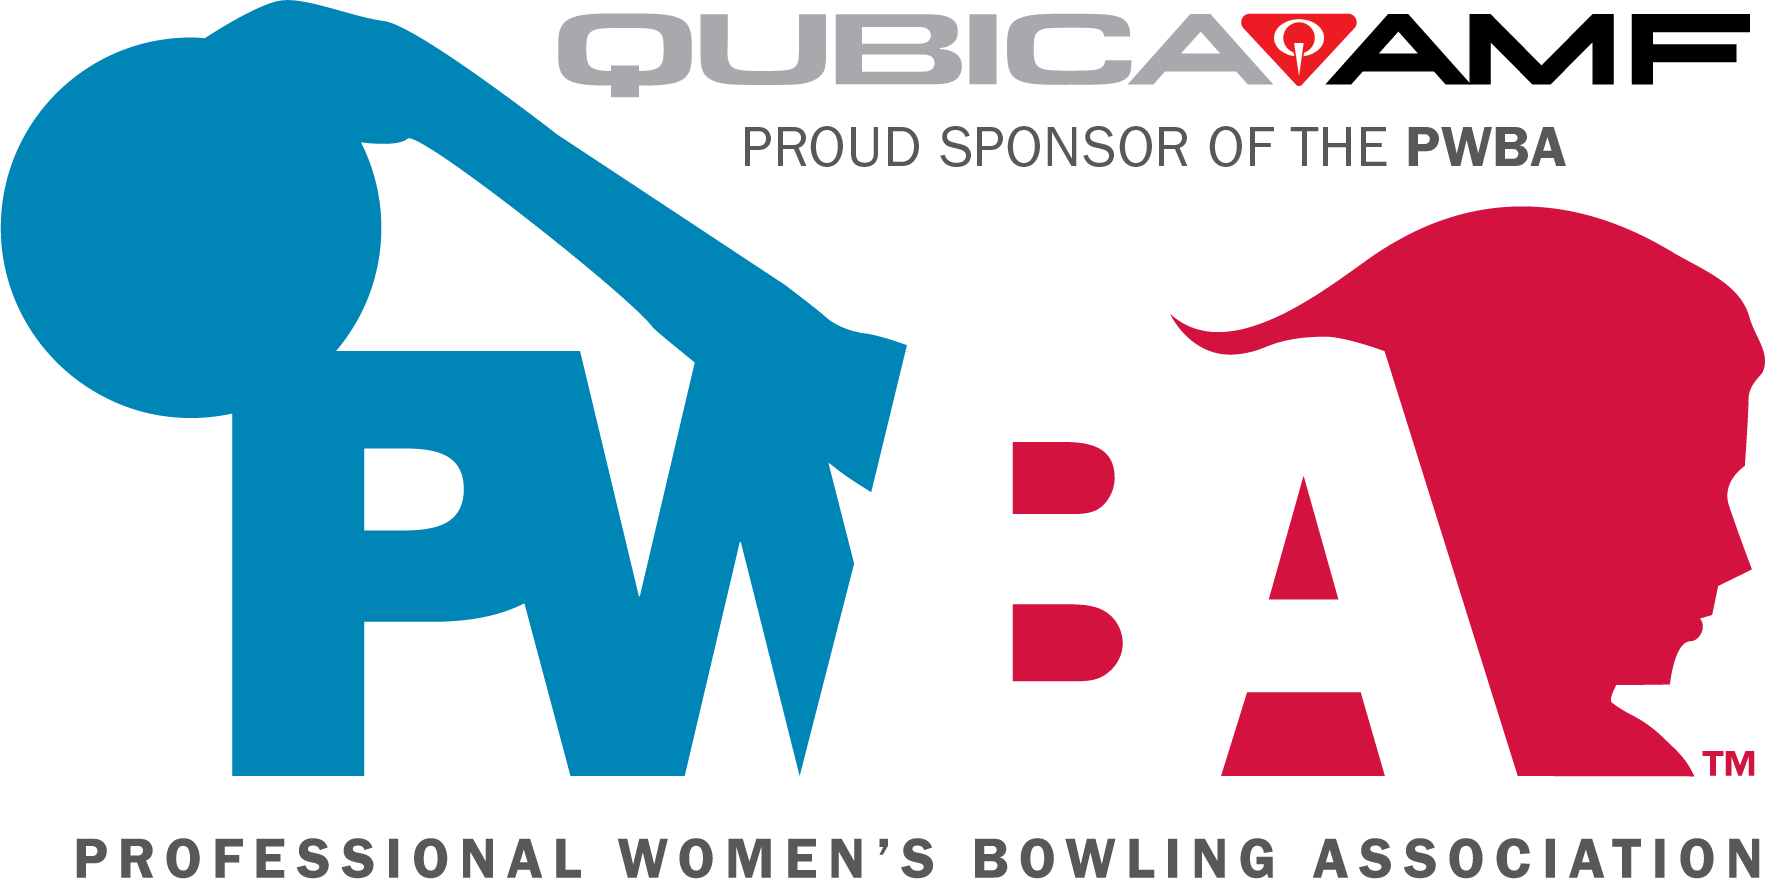 PWBA QAMF logo.png